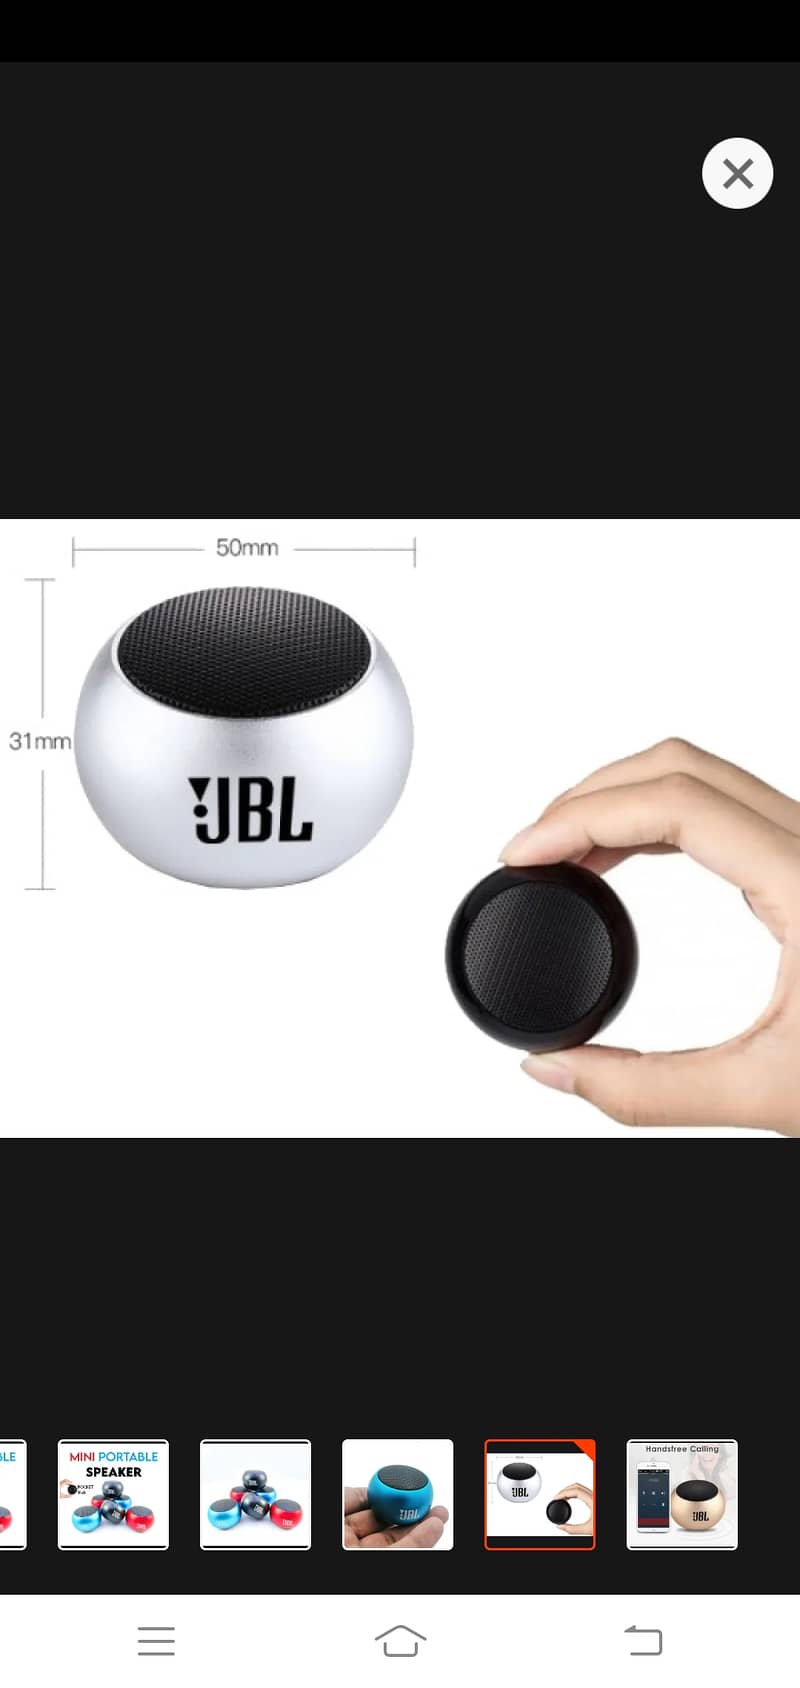 JBL portable speaker new box pack best quality 2